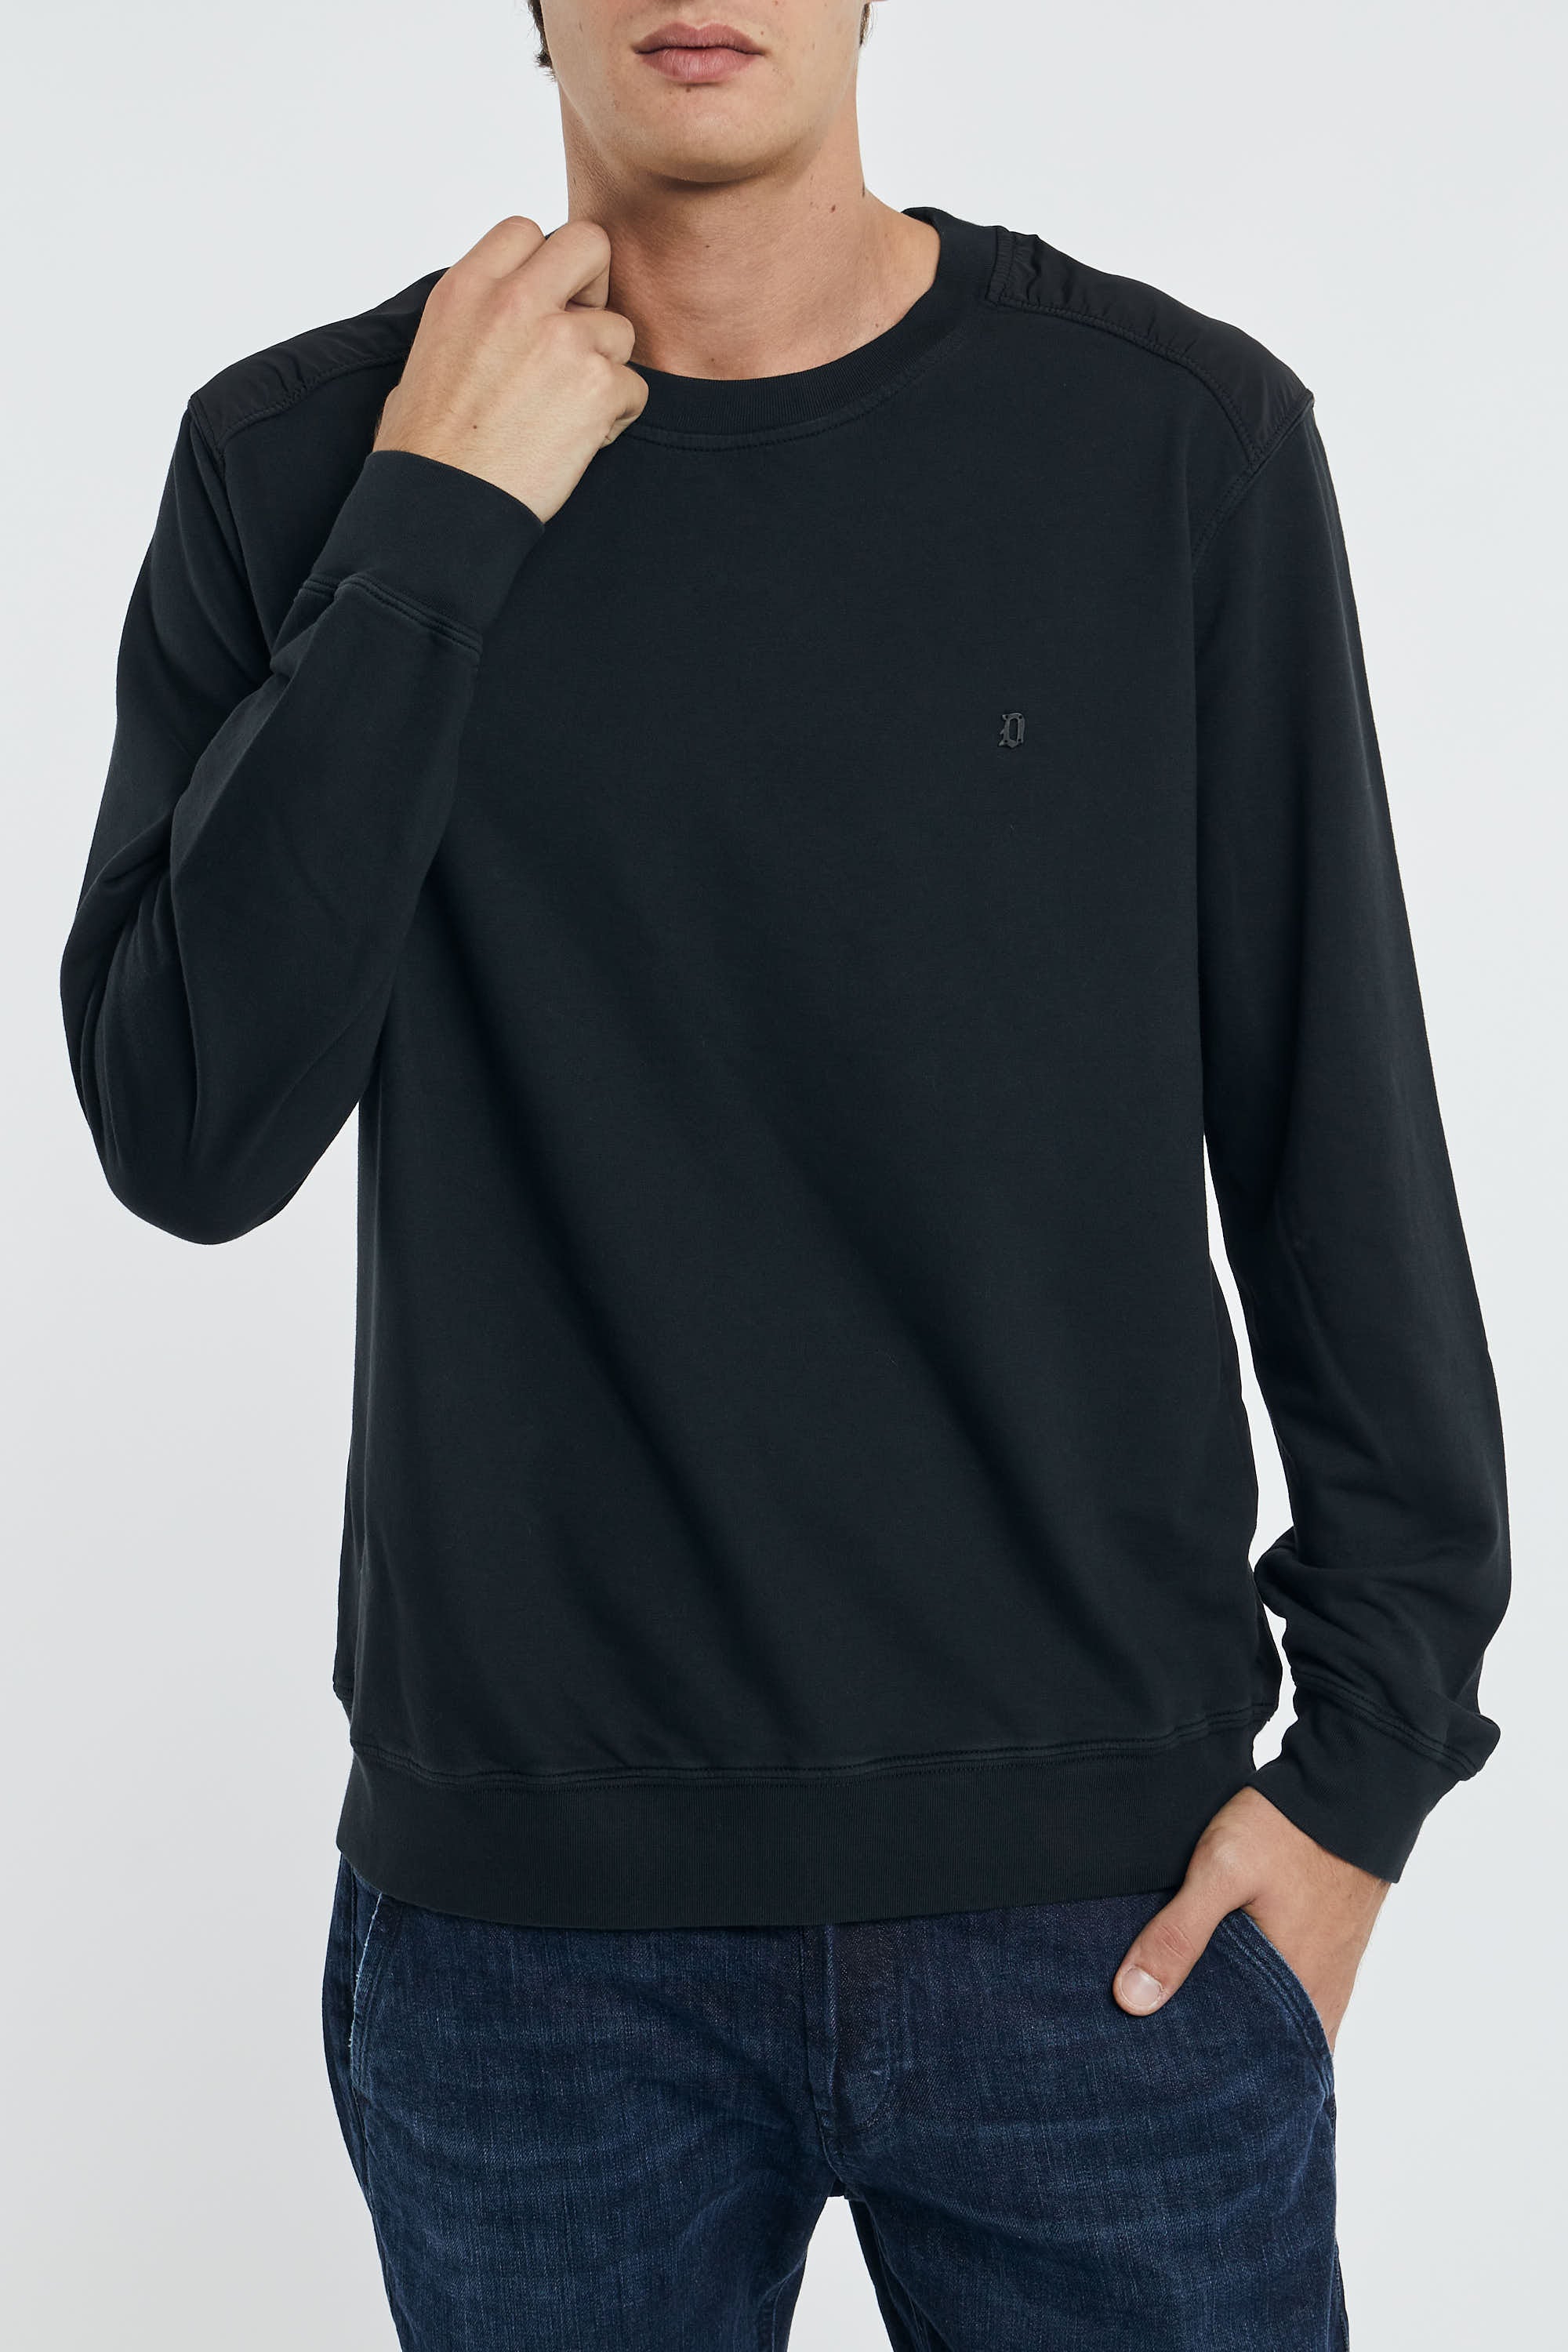 Dondup reguläres schwarzes Sweatshirt aus Baumwolle/Nylon-7